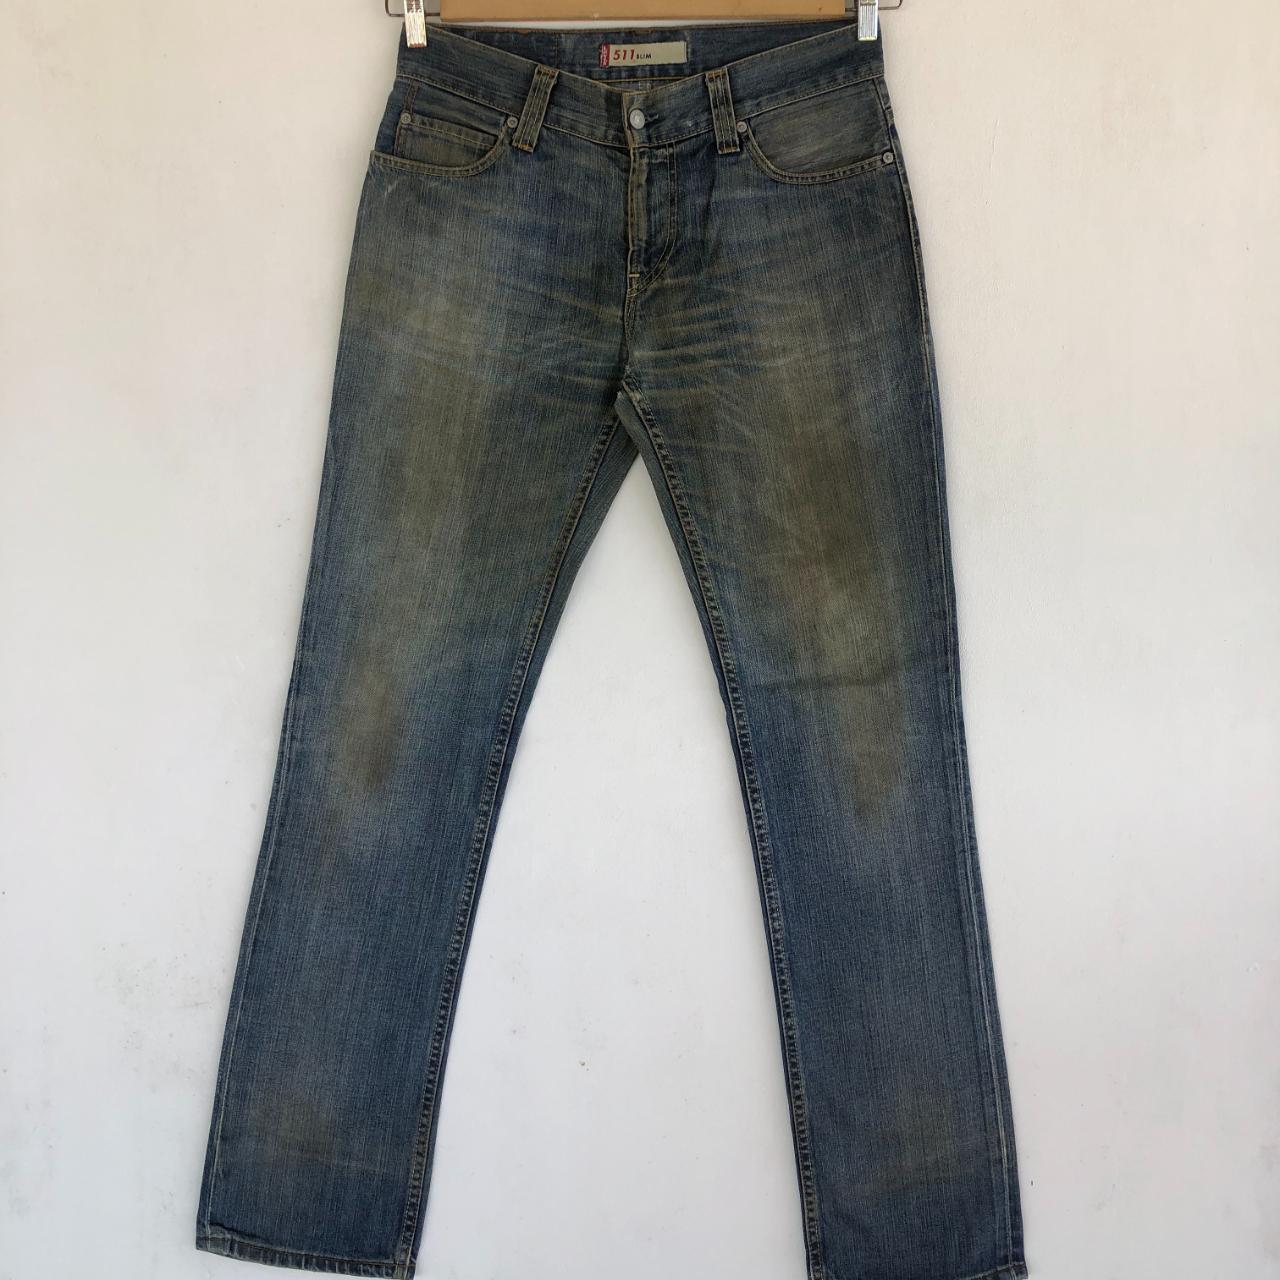 Vintage Levi's 511 Jeans Levis Dirty Skinny Denim... - Depop